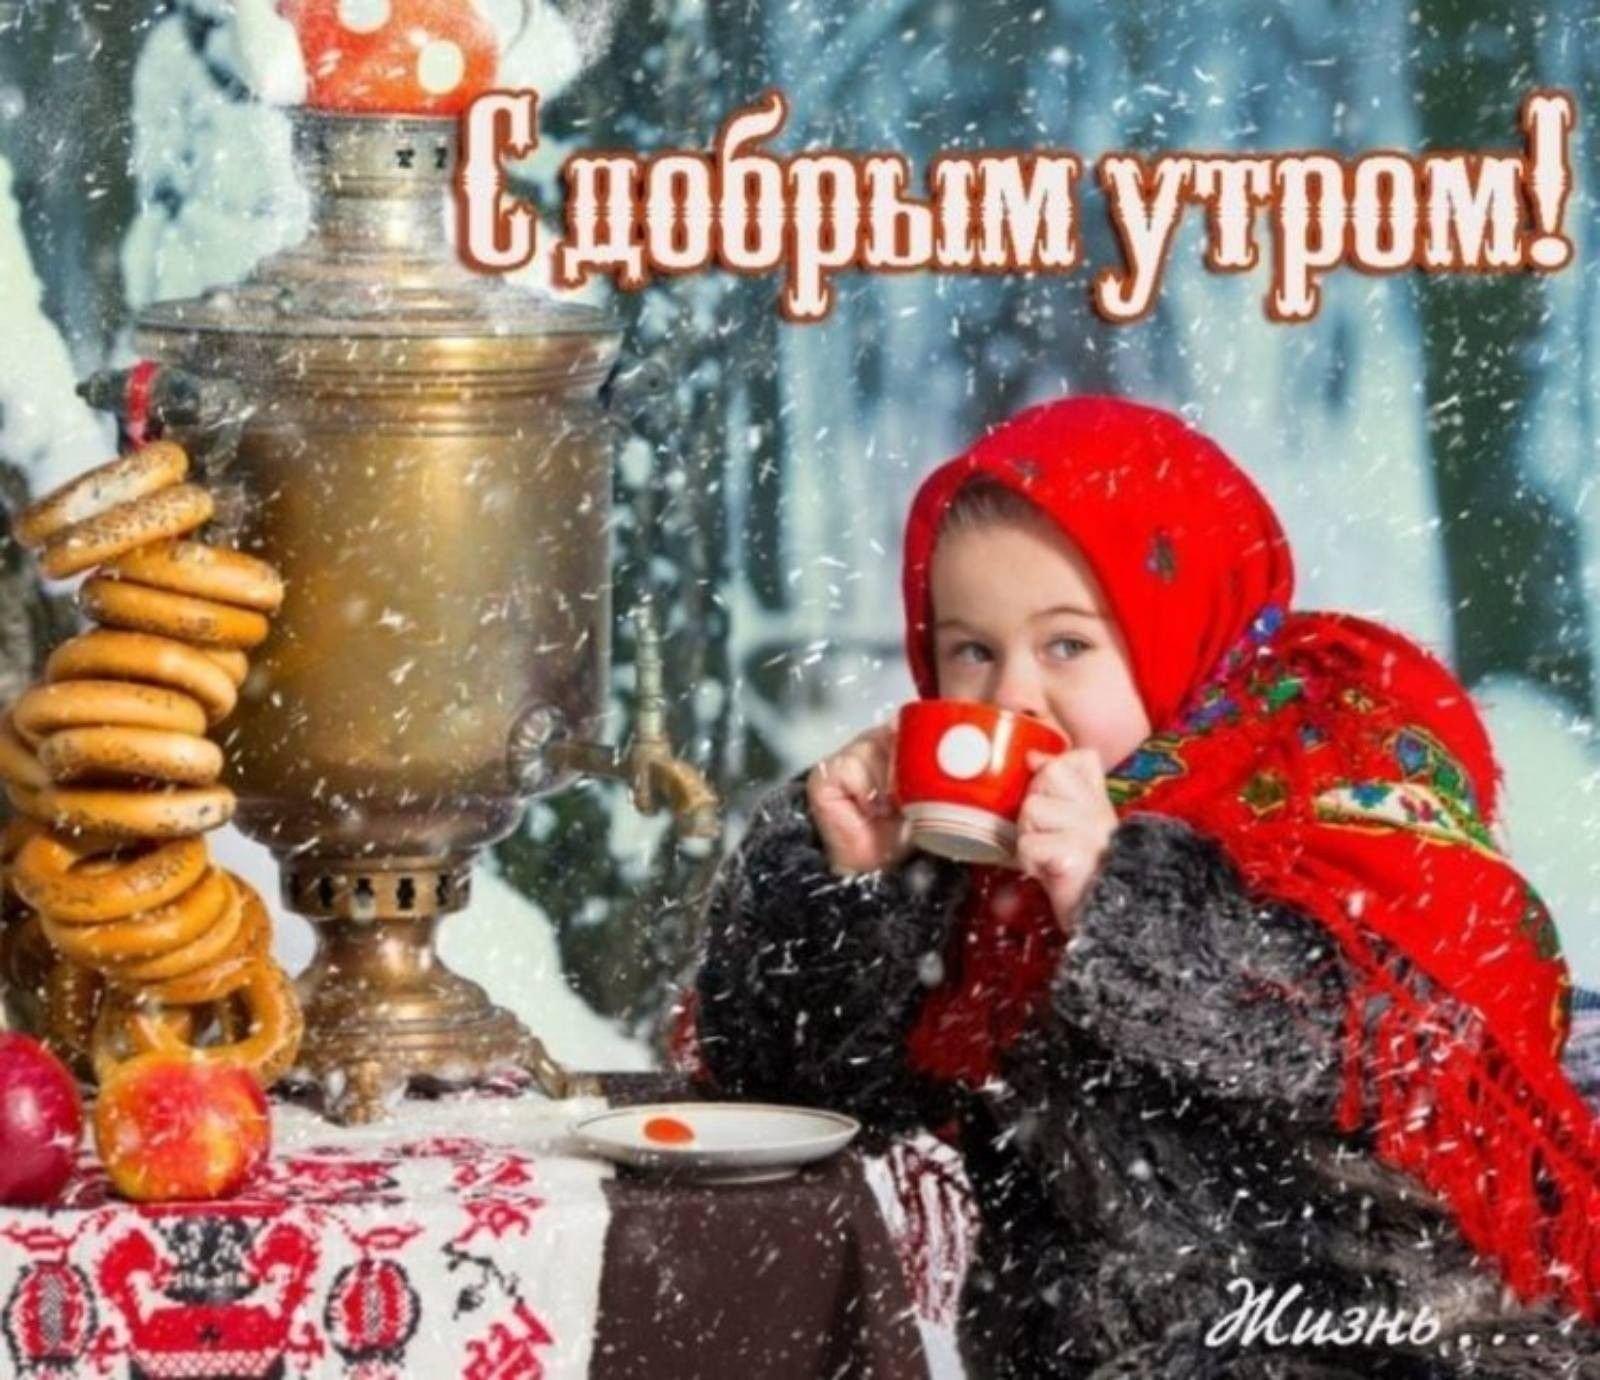 Горящие туры - Пусть самые красивые, счастливые, мирные, наполненные  любовью дни будут вашими!💛 Доброе утро!😊 #goriachietur #киев #туризм  #travel #отдых #отпуск #пейзаж #хочунаморе #купитьтур #путешествуйтеснами # утро ⠀ https://ht.kiev.ua | Facebook